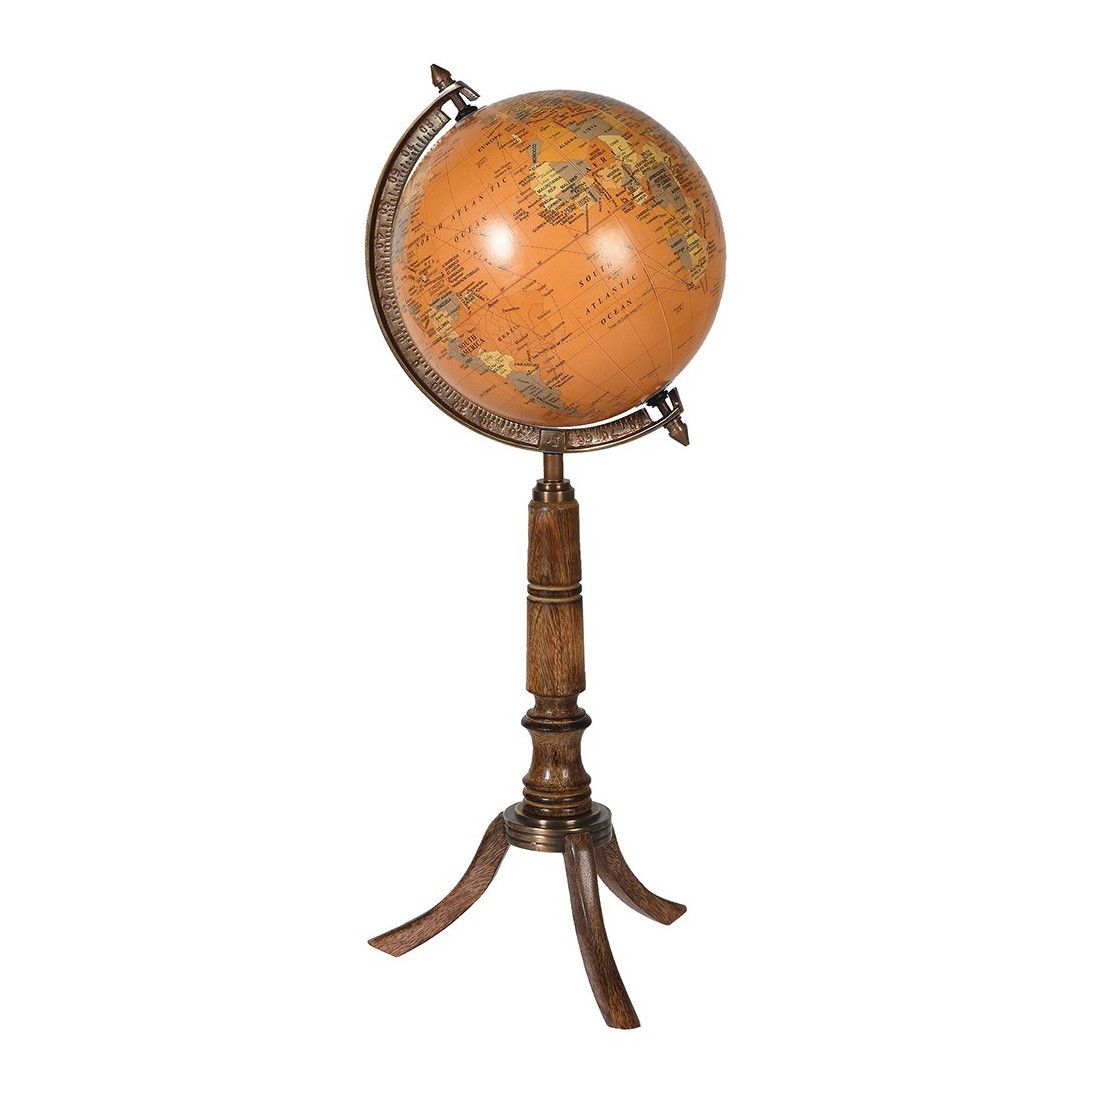 Acheter Nouveau Globe en bois ornement rétro Vintage décor à la maison  bureau ornements de maison artisanat Figurines